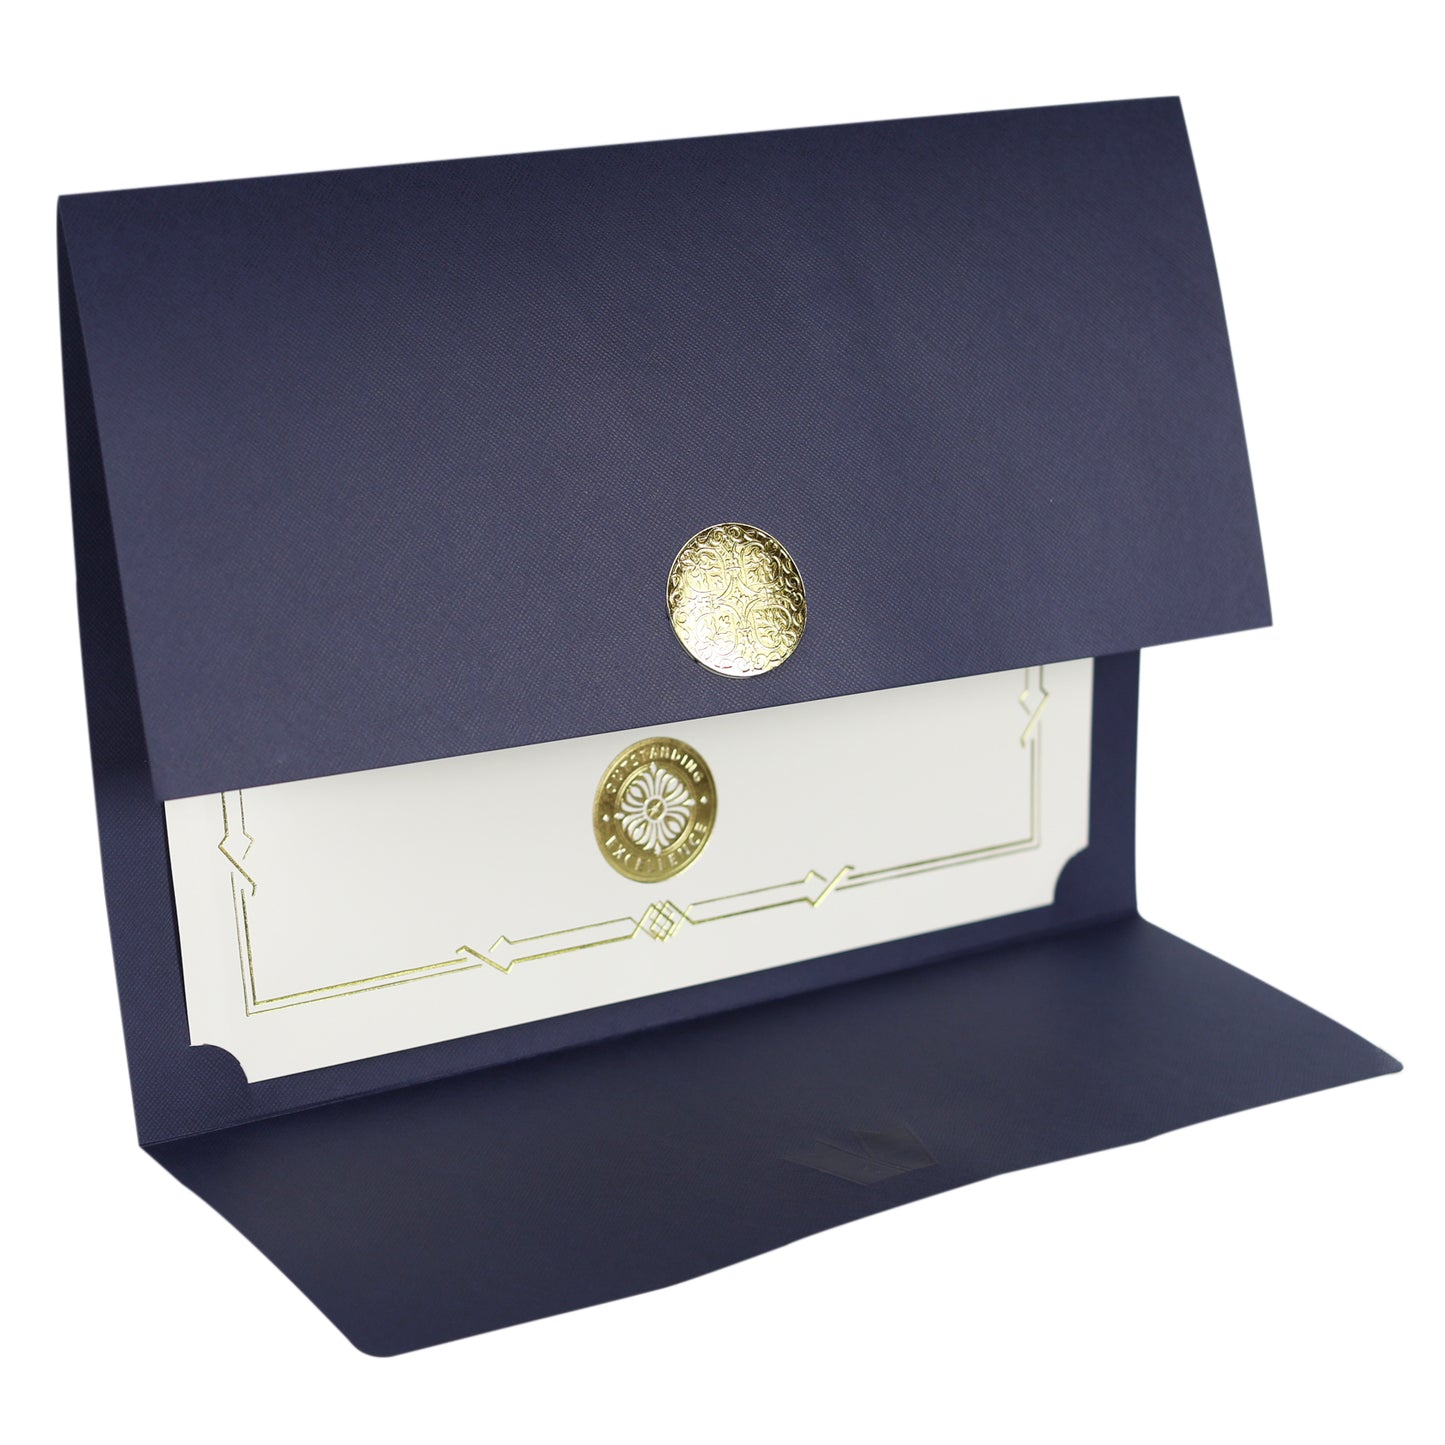 St. James® Porte-certificats/Couvertures de documents/Porte-diplômes, Bleu marine, Sceau d'or avec ruban rouge, Paquet de 5, 83815